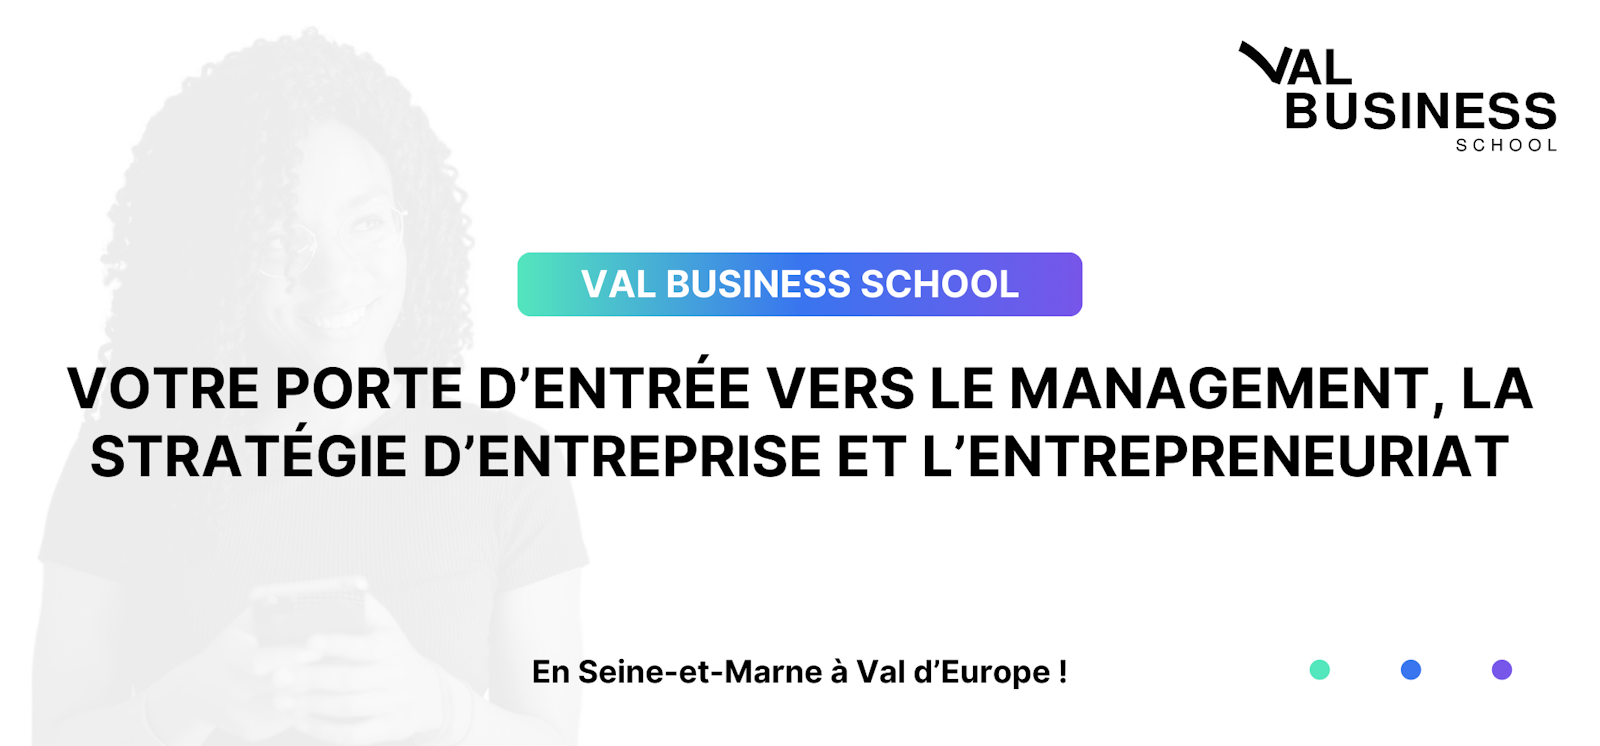 Val Business School : Votre porte d’entrée vers le management, la stratégie d’entreprise et l’entrepreneuriat à Val d'Europe.